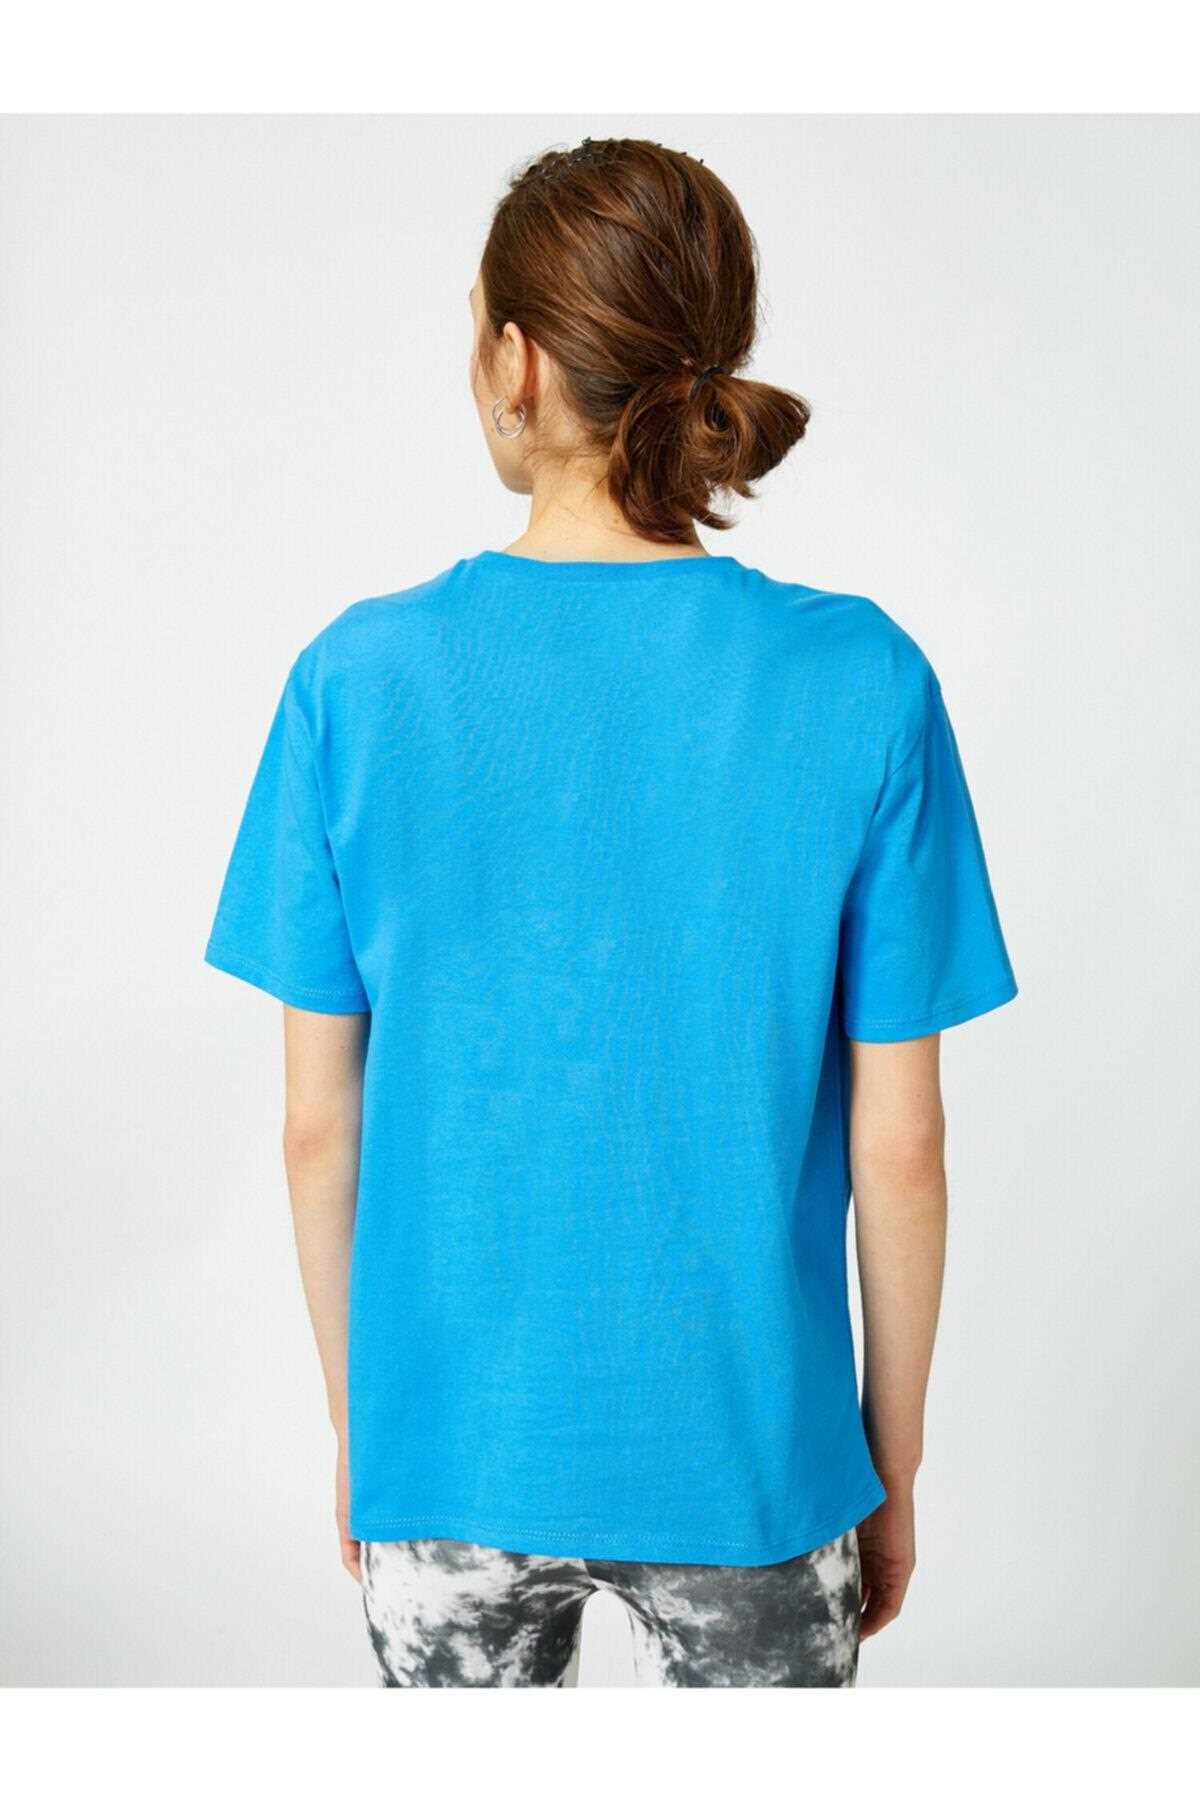 خرید اسان تیشرت زنانه اسپرت جدید برند کوتون رنگ آبی ty99036827